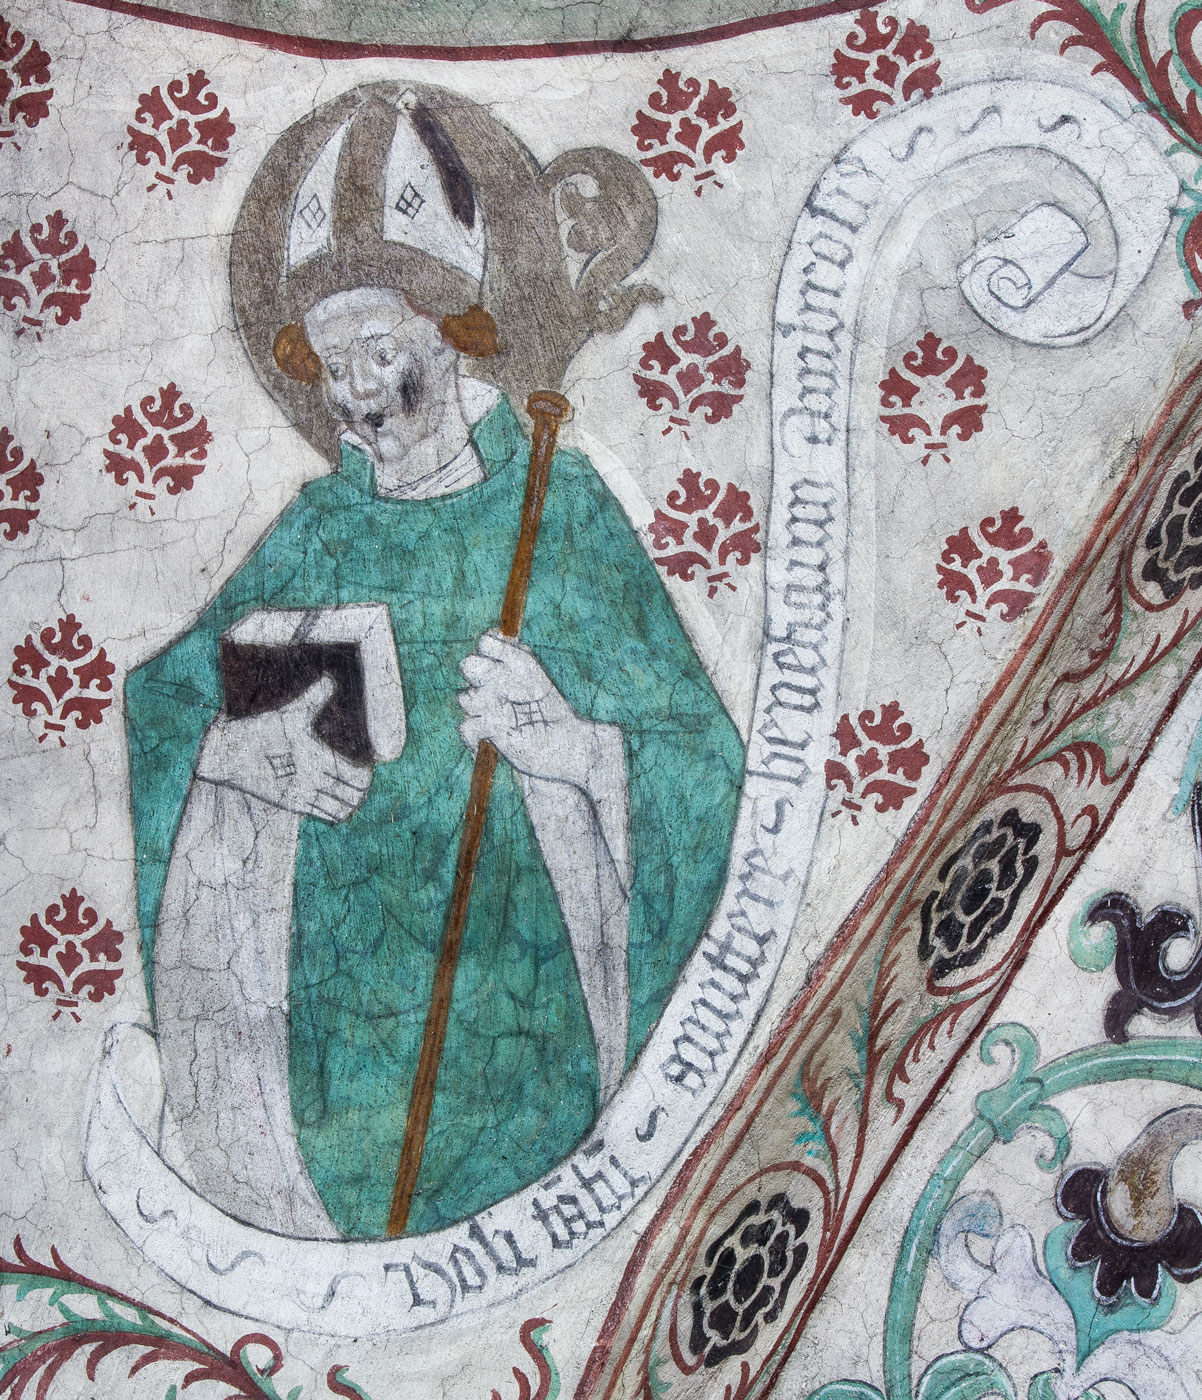 Ambrosius, biskop, en av de fyra latinska kyrkofäderna (S) - Täby kyrka